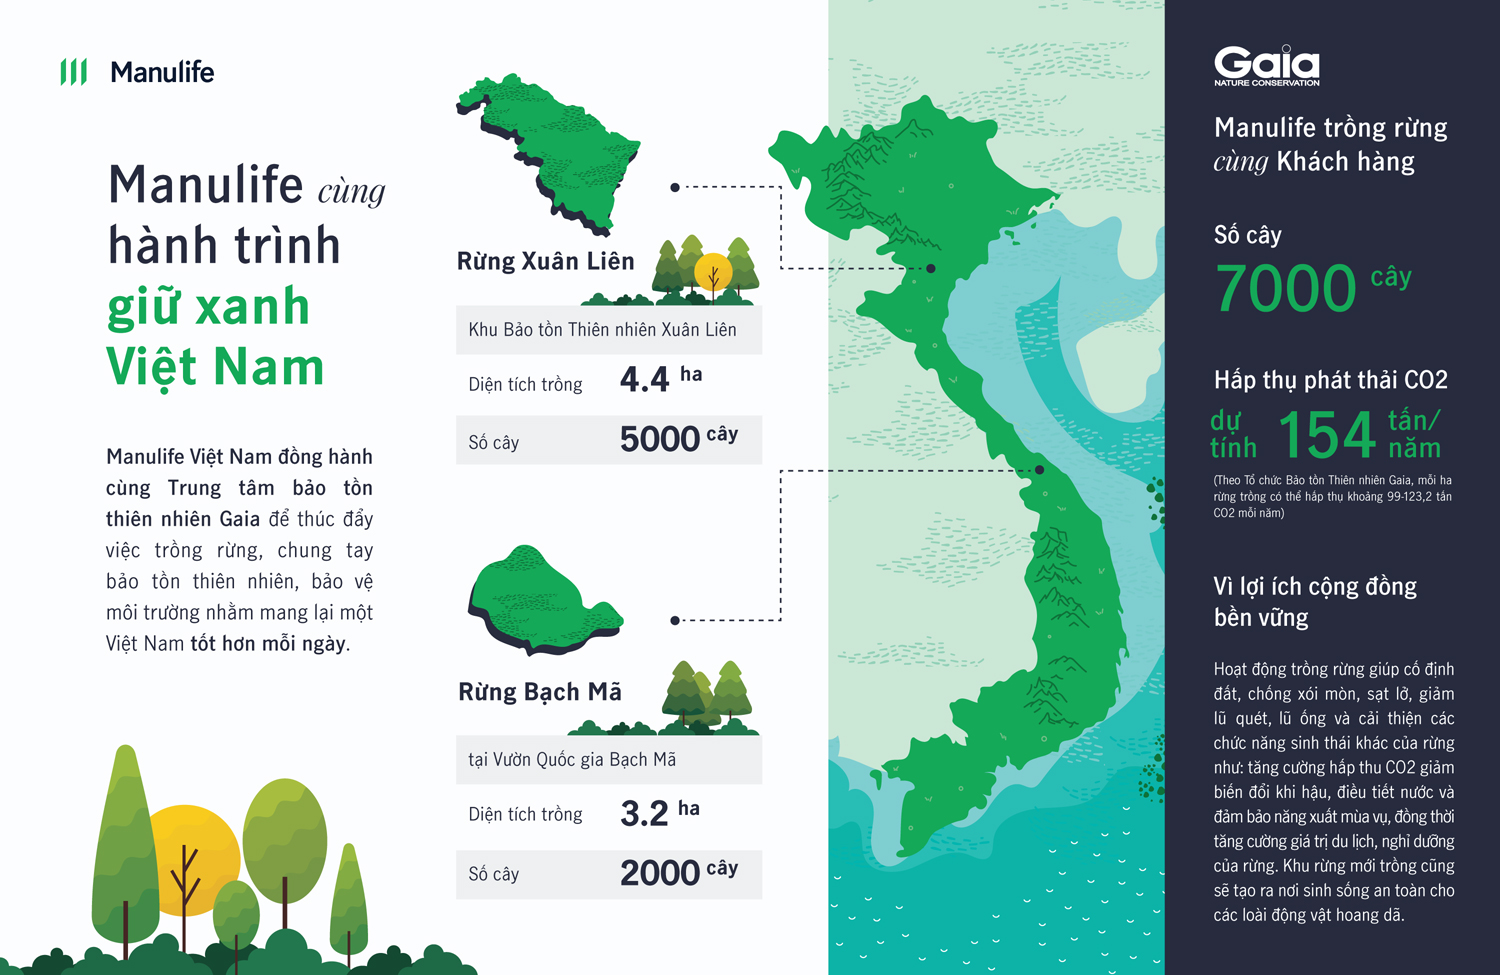 Manulife Việt Nam cùng khách hàng trồng rừng, hướng tới một tương lai bền vững - 1